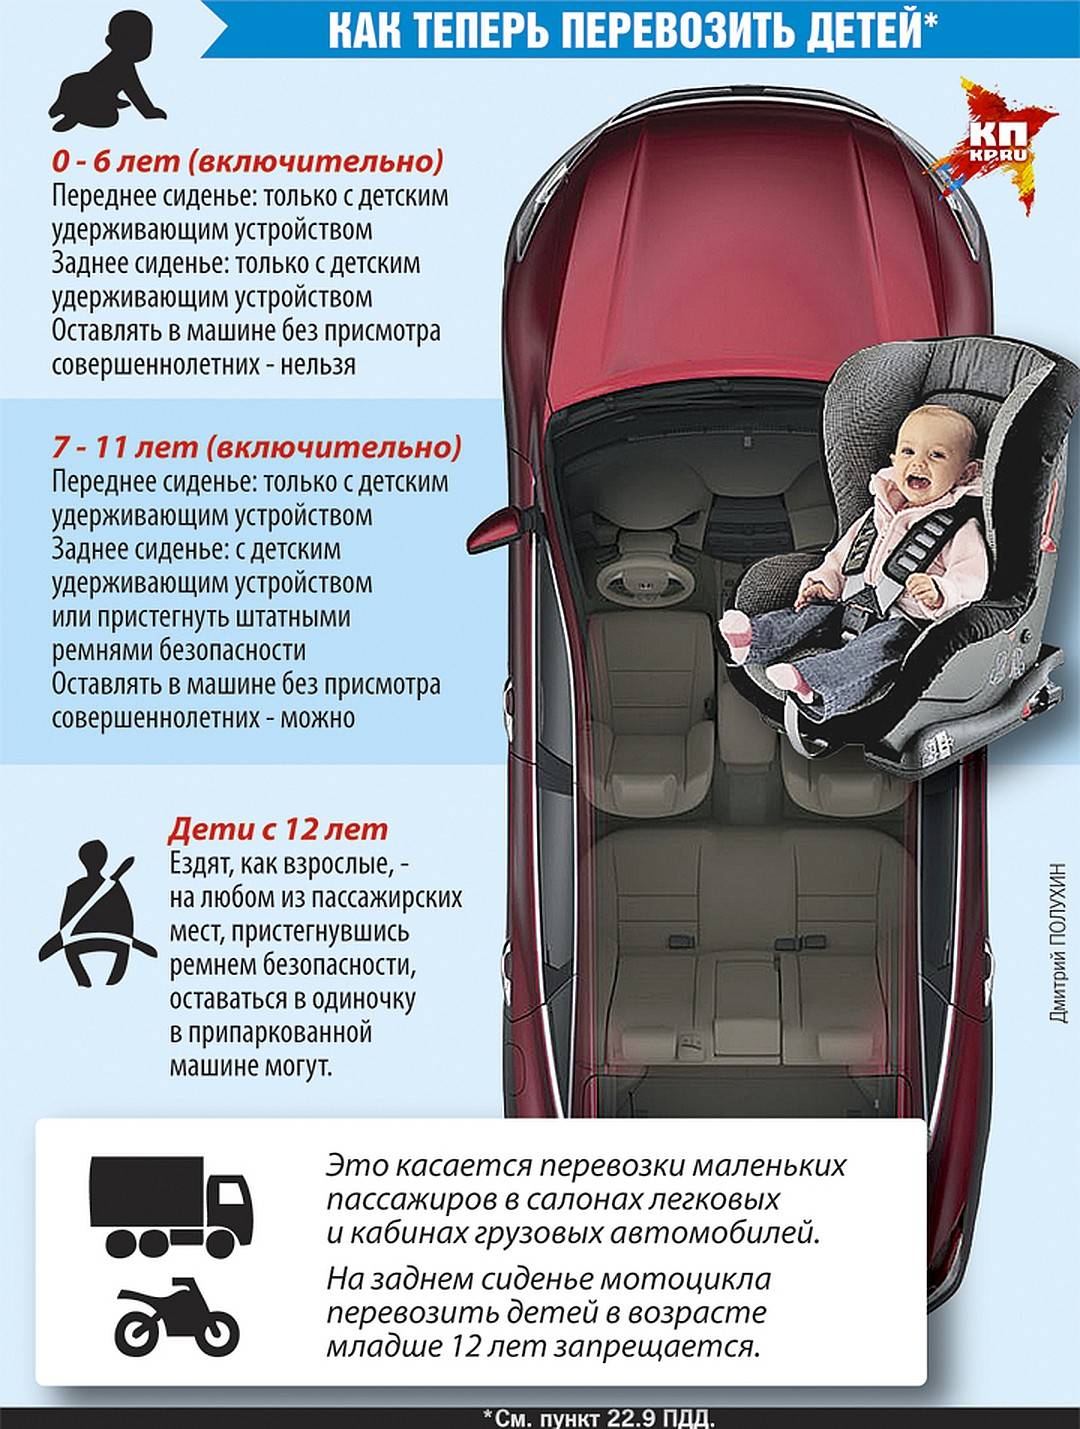 Штраф за перевозку детей без кресла 2018-2019 года